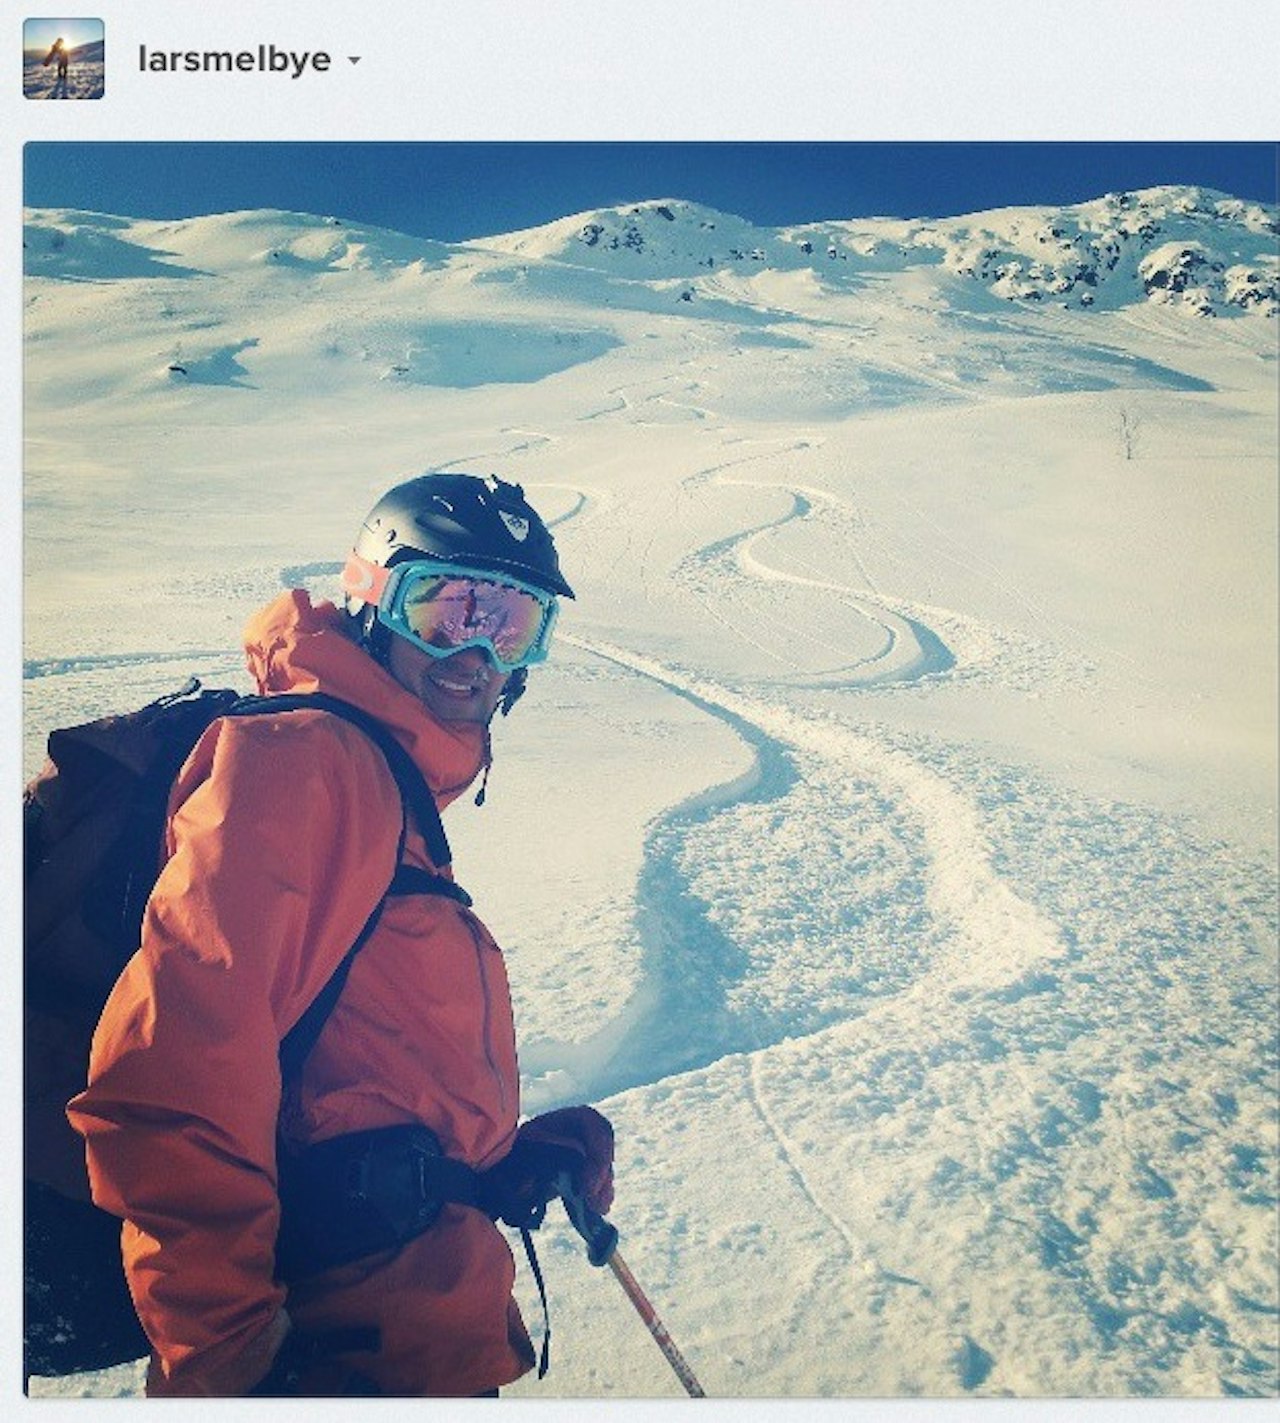 DAGENS BILDER: På Instagram koker det over med skibilder fra påskefjellet, hvor nå enn det er. Lars Melbye fant pudder i Sogndal og hashtagget det hele med #friflyt.